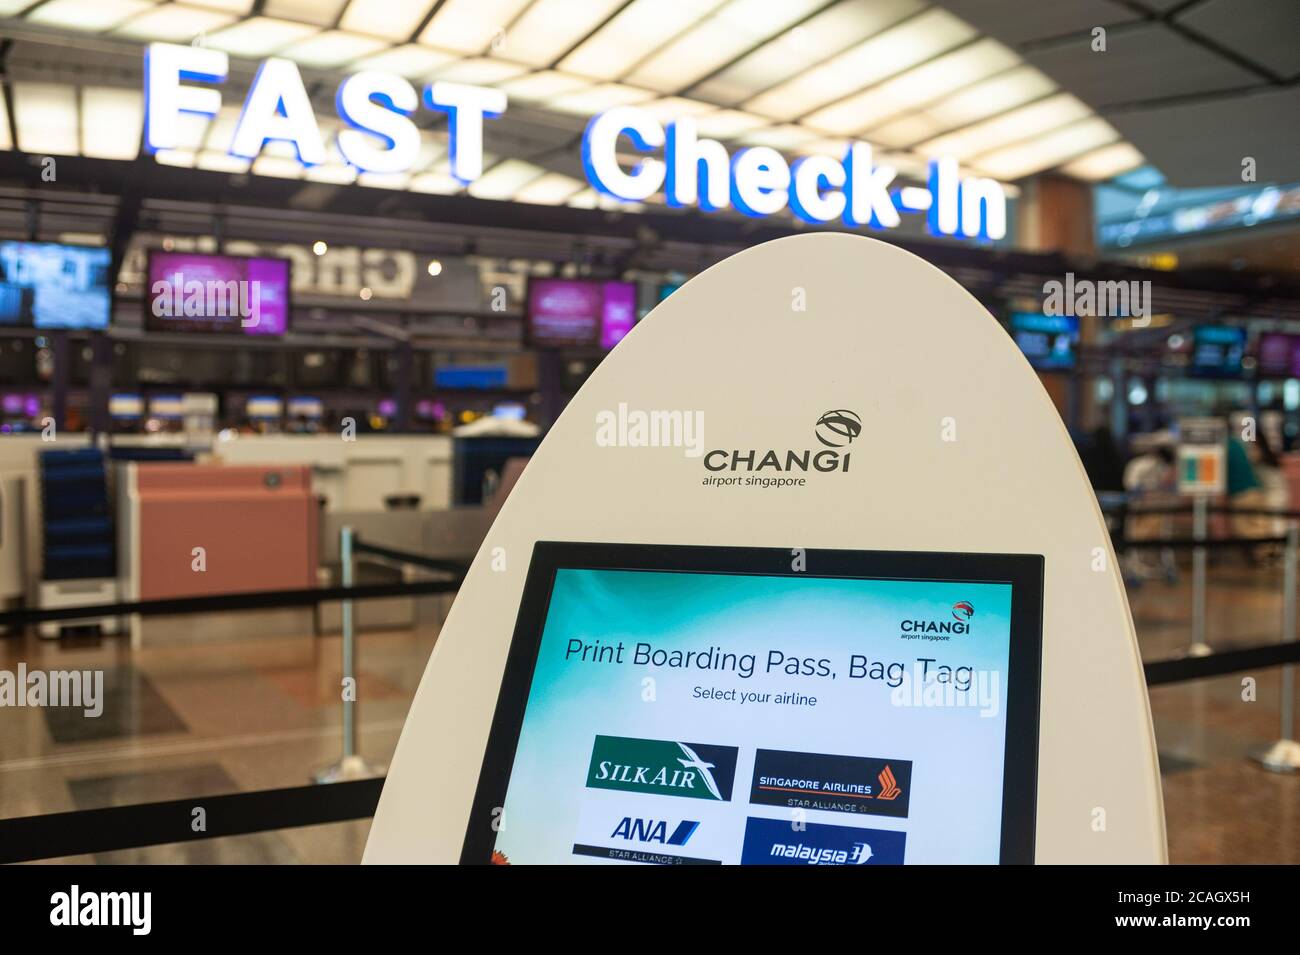 31.01.2020, Singapour, Singapour - zone d'enregistrement rapide avec machines d'enregistrement électroniques dans le terminal 2 de l'aéroport international de Changi, quelques semaines plus tard Banque D'Images